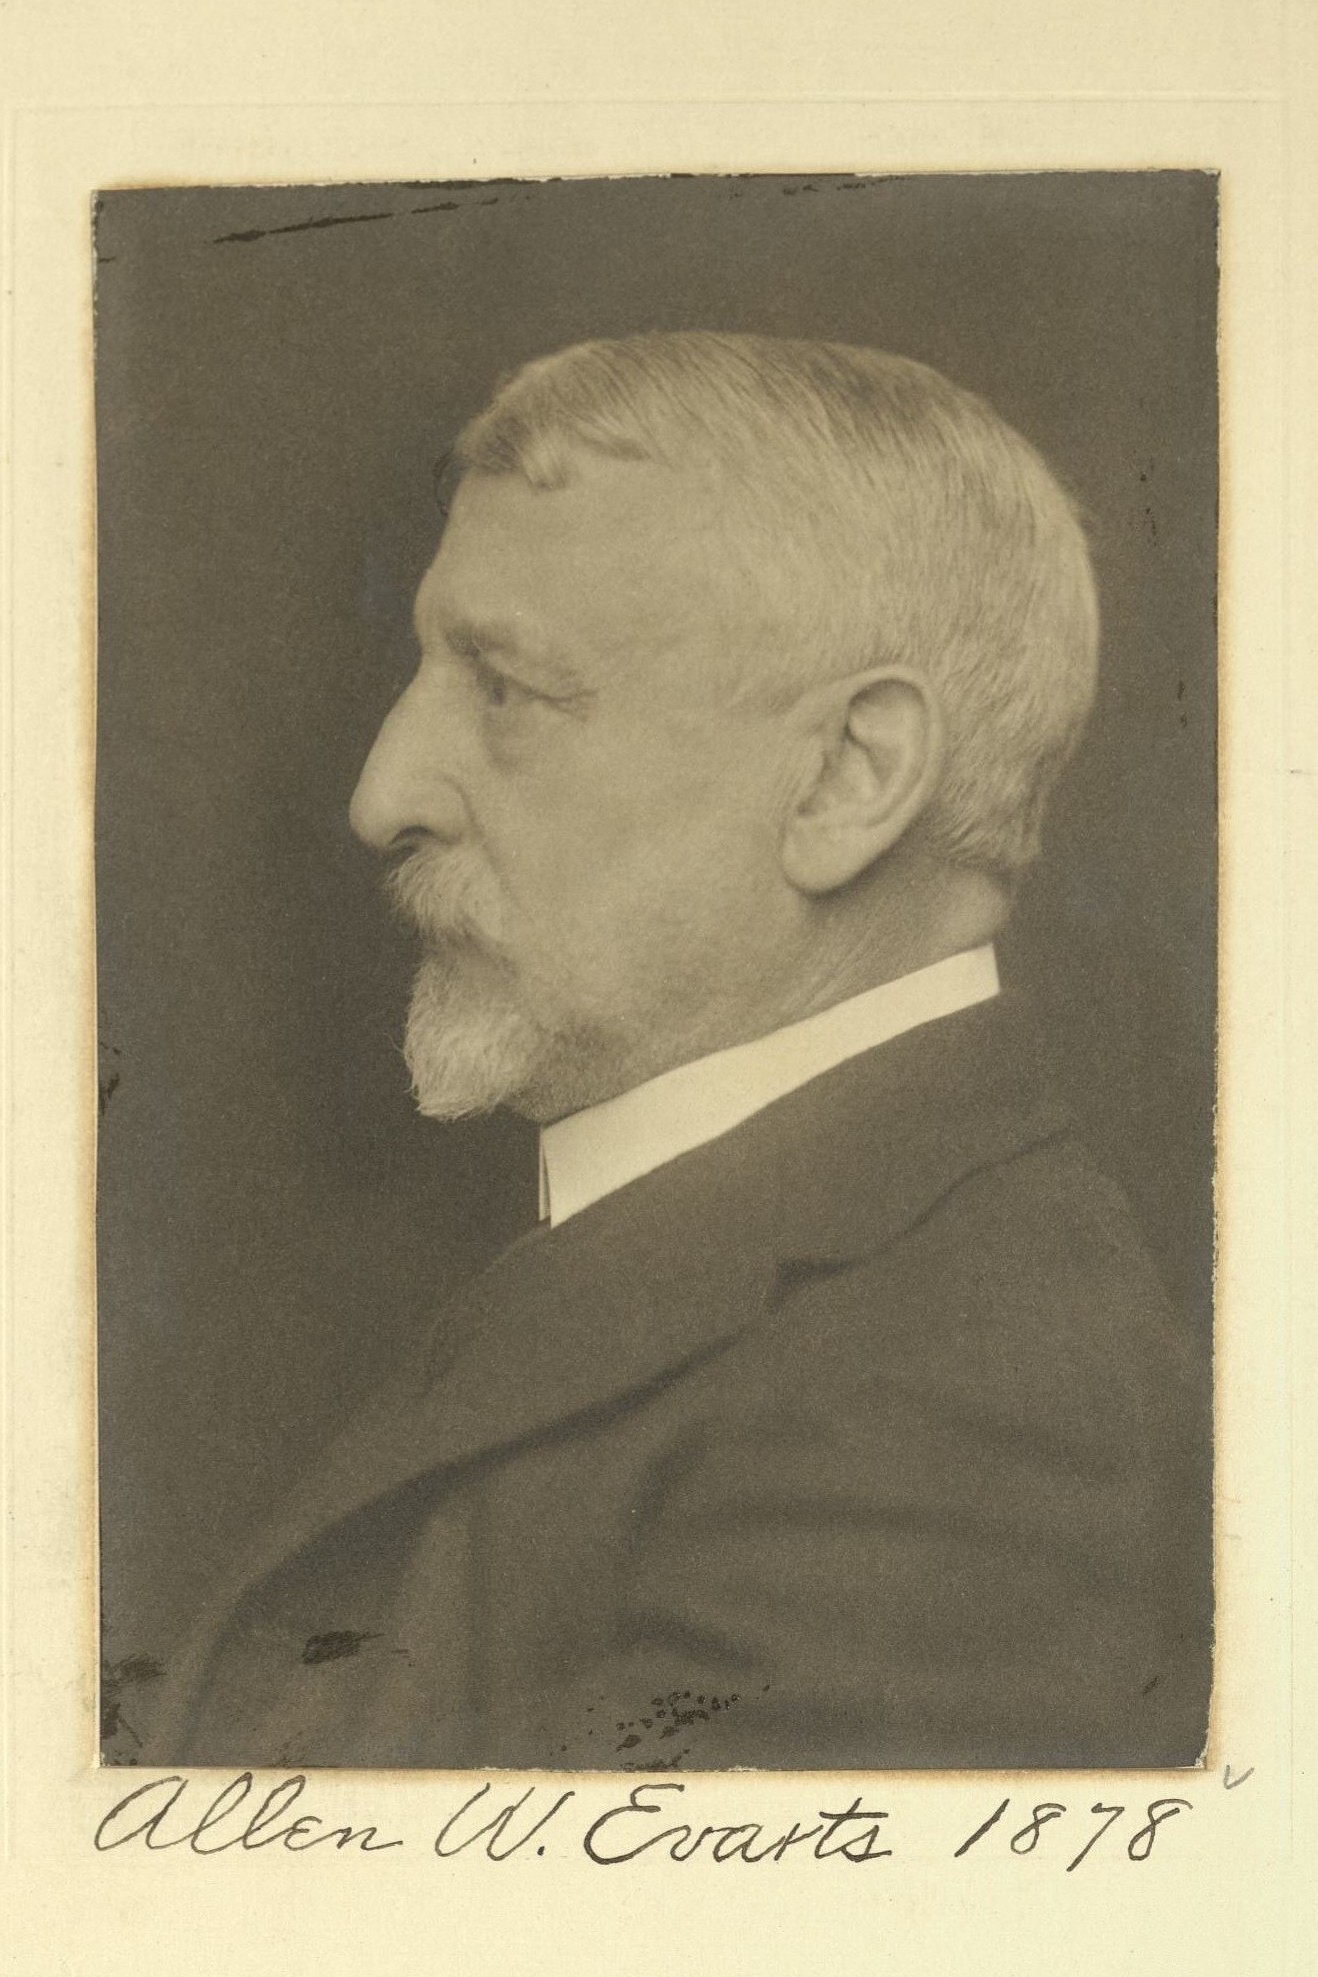 Member portrait of Allen W. Evarts